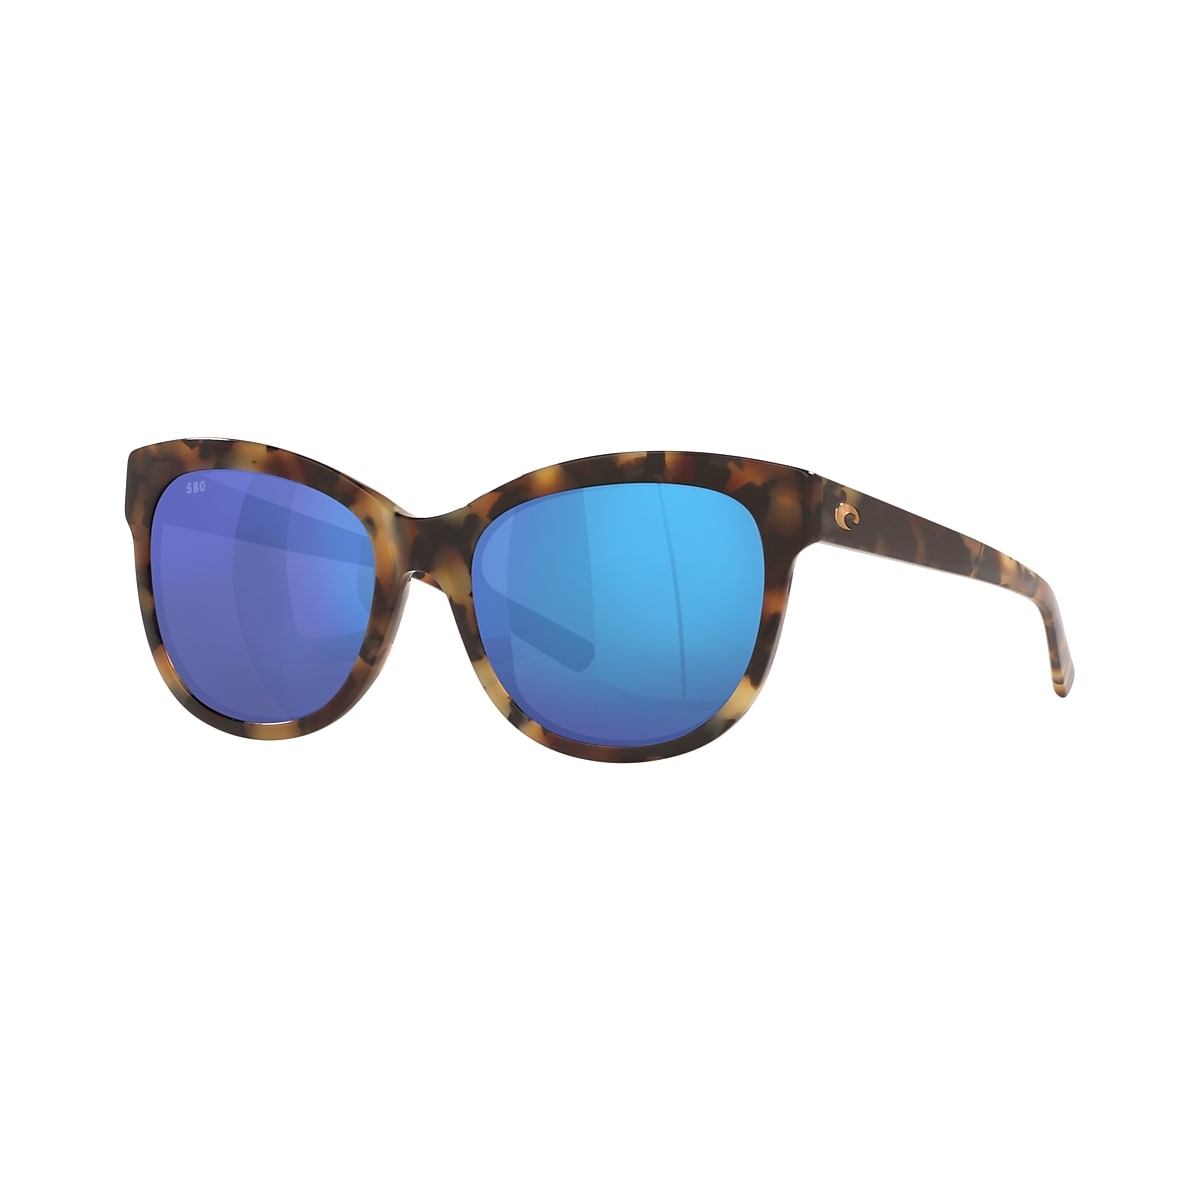 Bimini Polarized Sunglasses in Blue Mirror